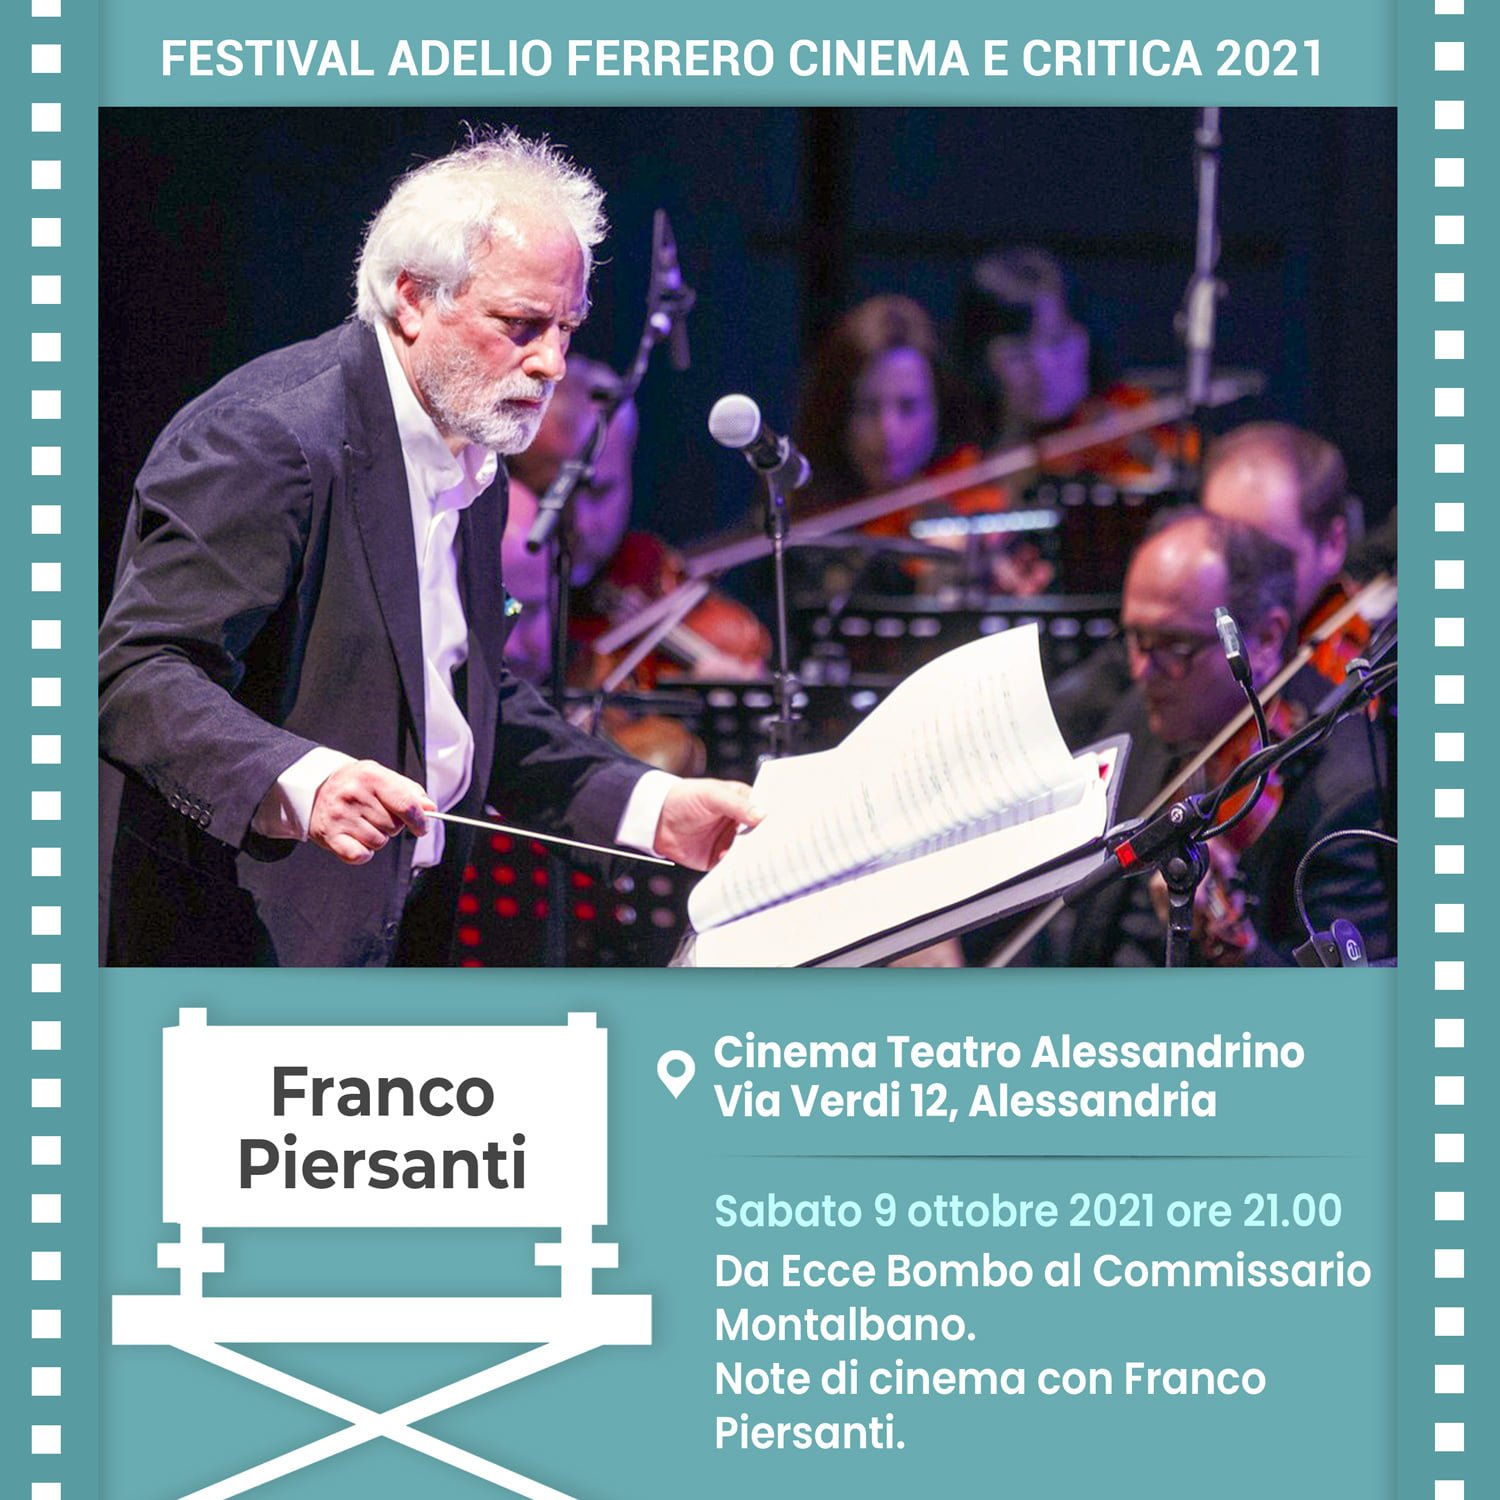 Sabato 9 ottobre al Teatro Alessandrino “Note di cinema” con Franco Piersanti